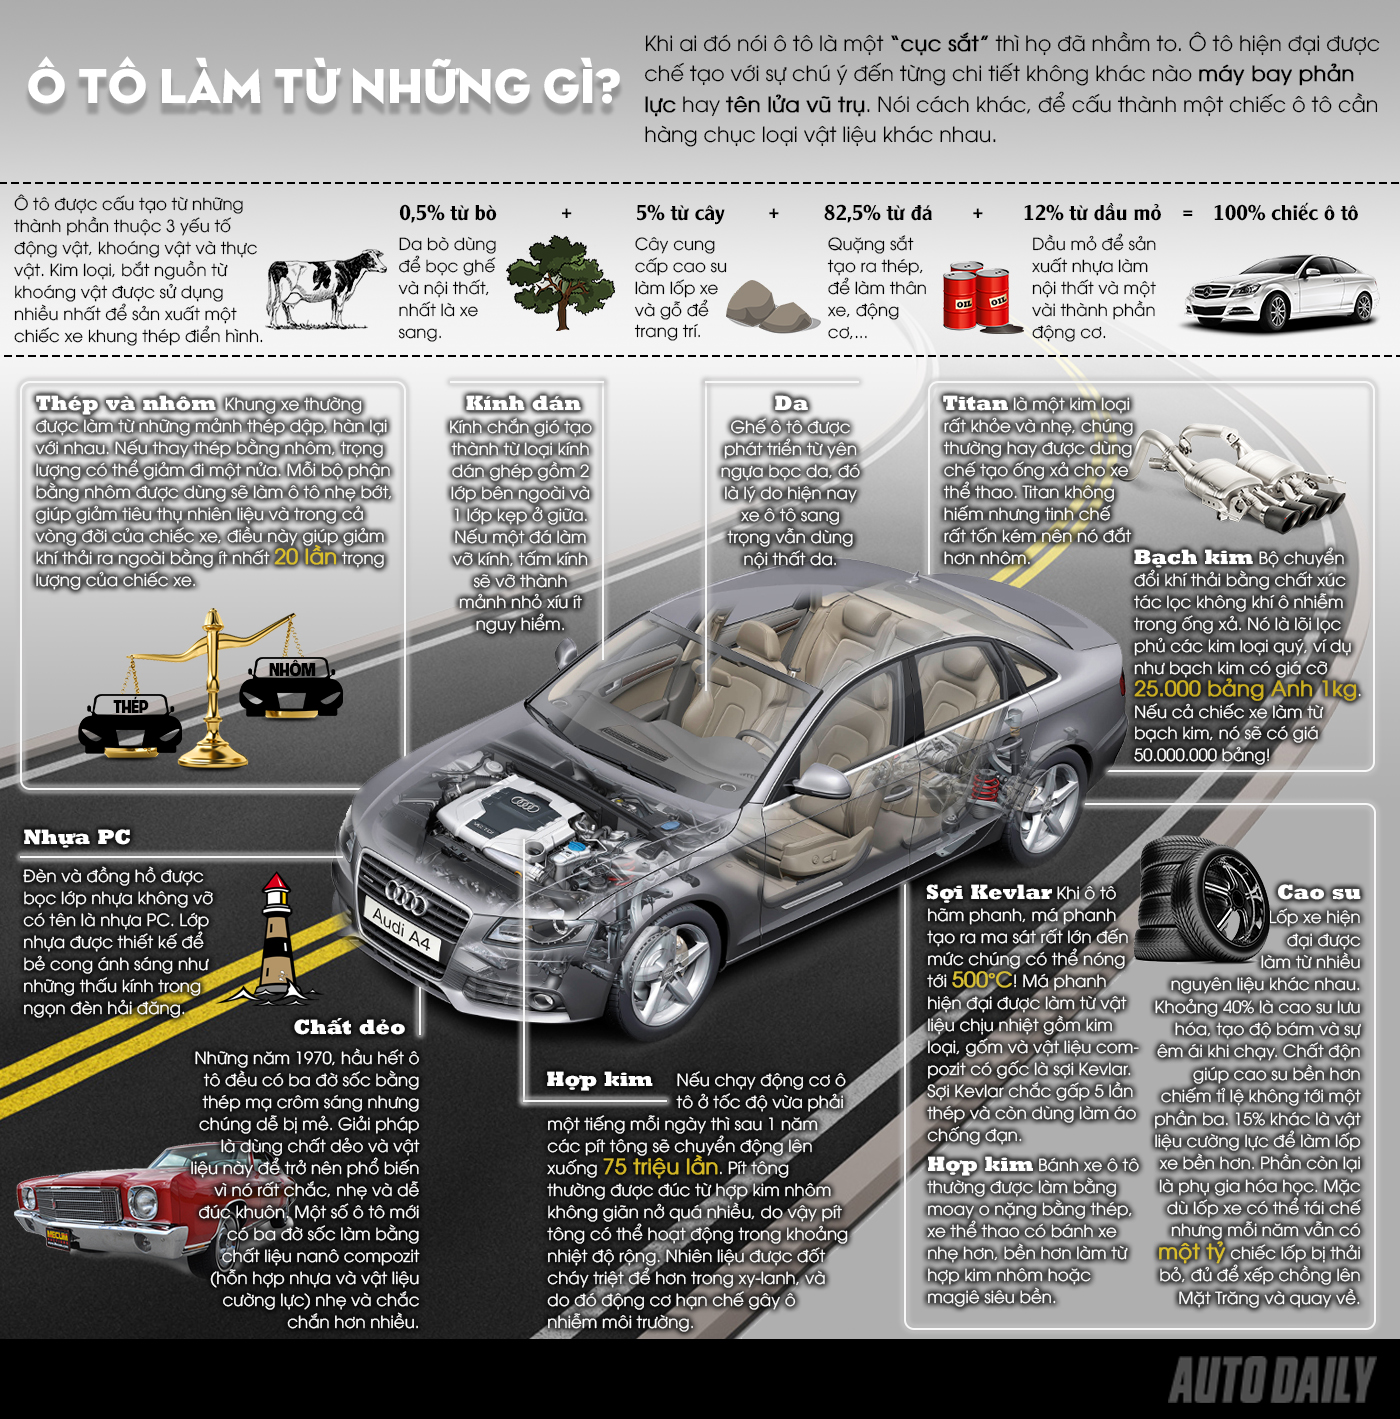 [Infographic] Ô tô làm từ những gì?